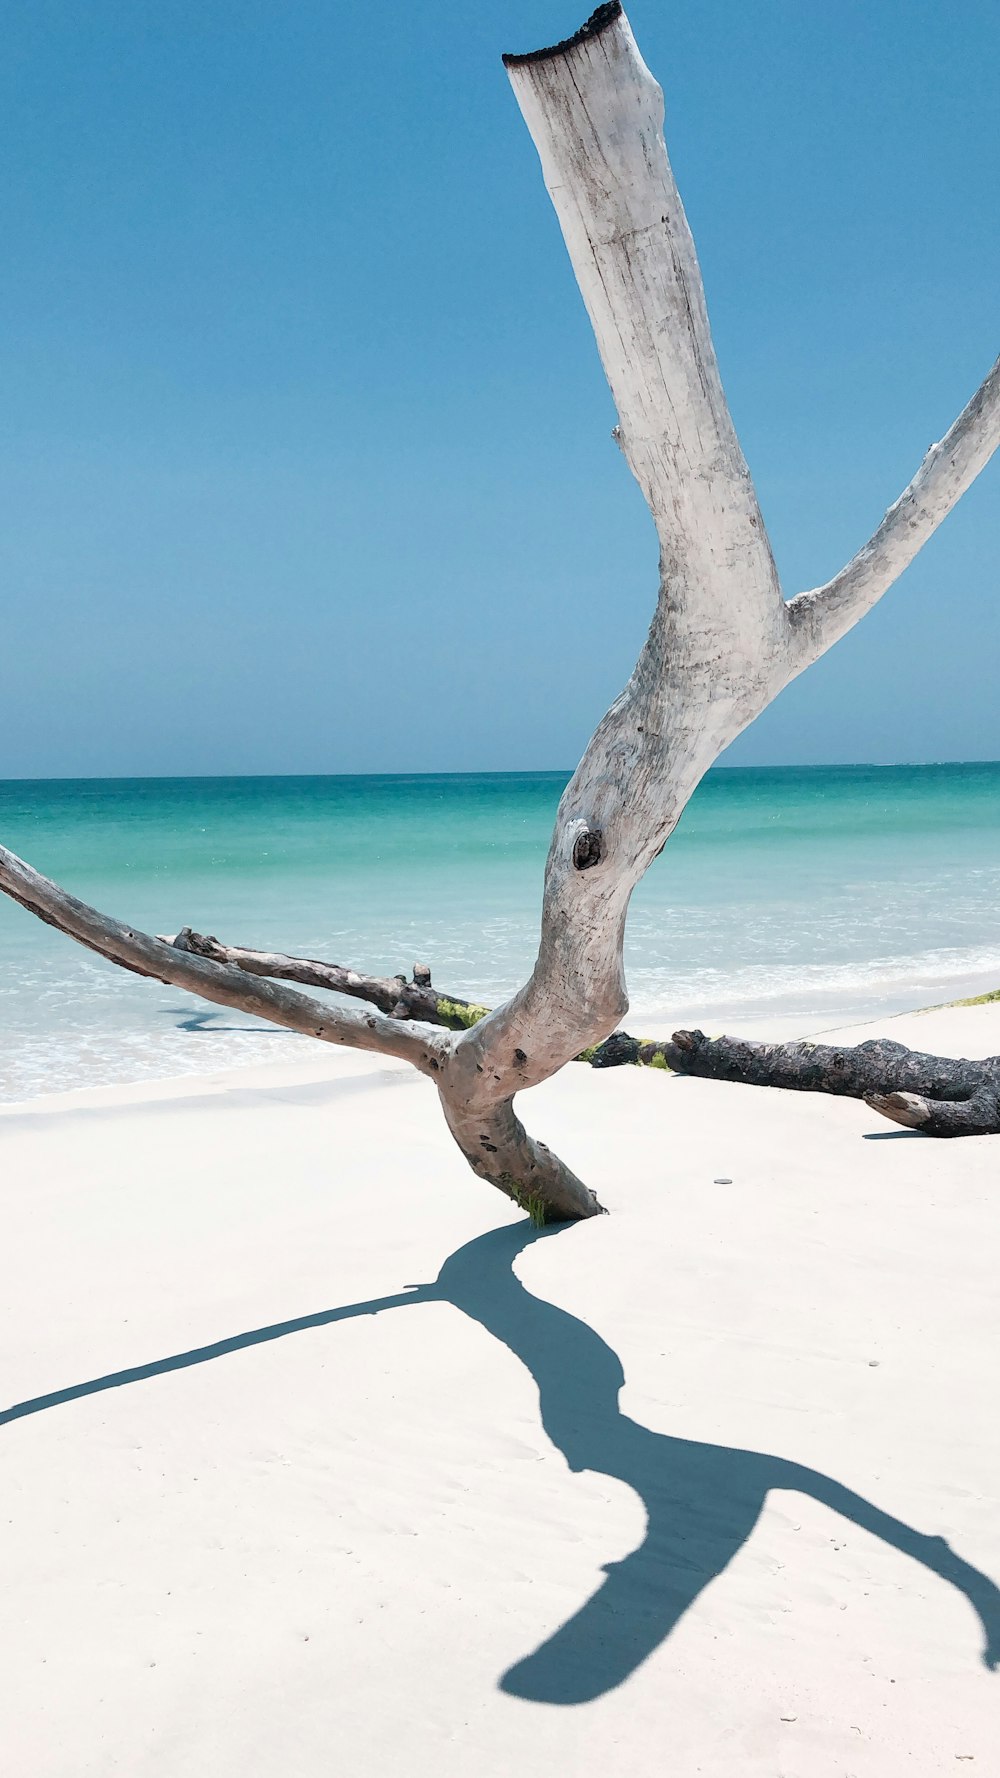 Tronco de árbol marrón en la playa de arena blanca durante el día